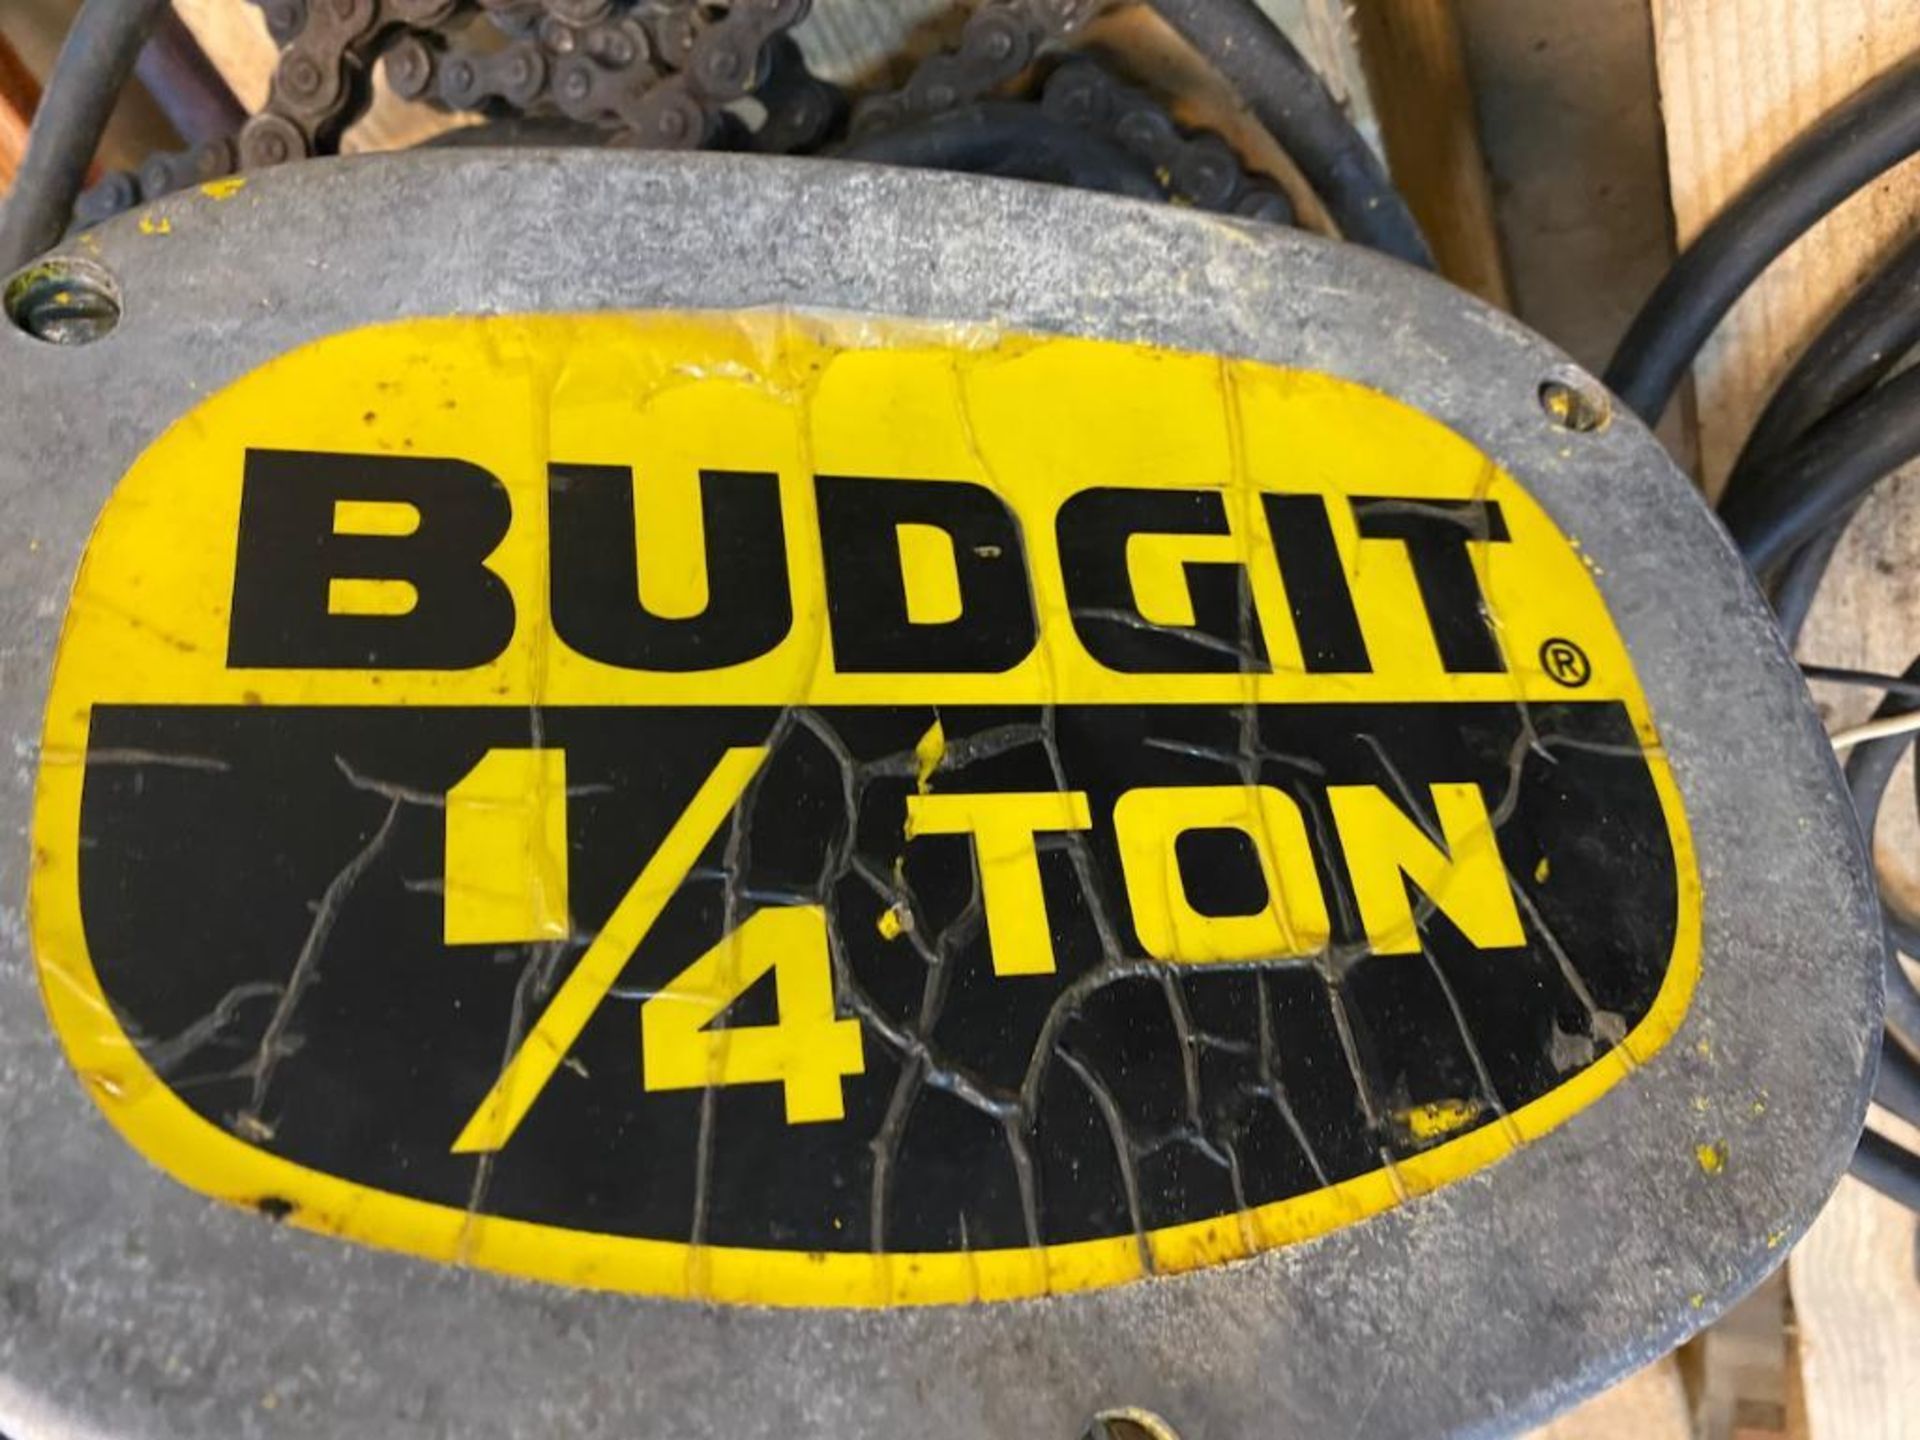 Budgit 1/4 ton hoist - Image 5 of 5